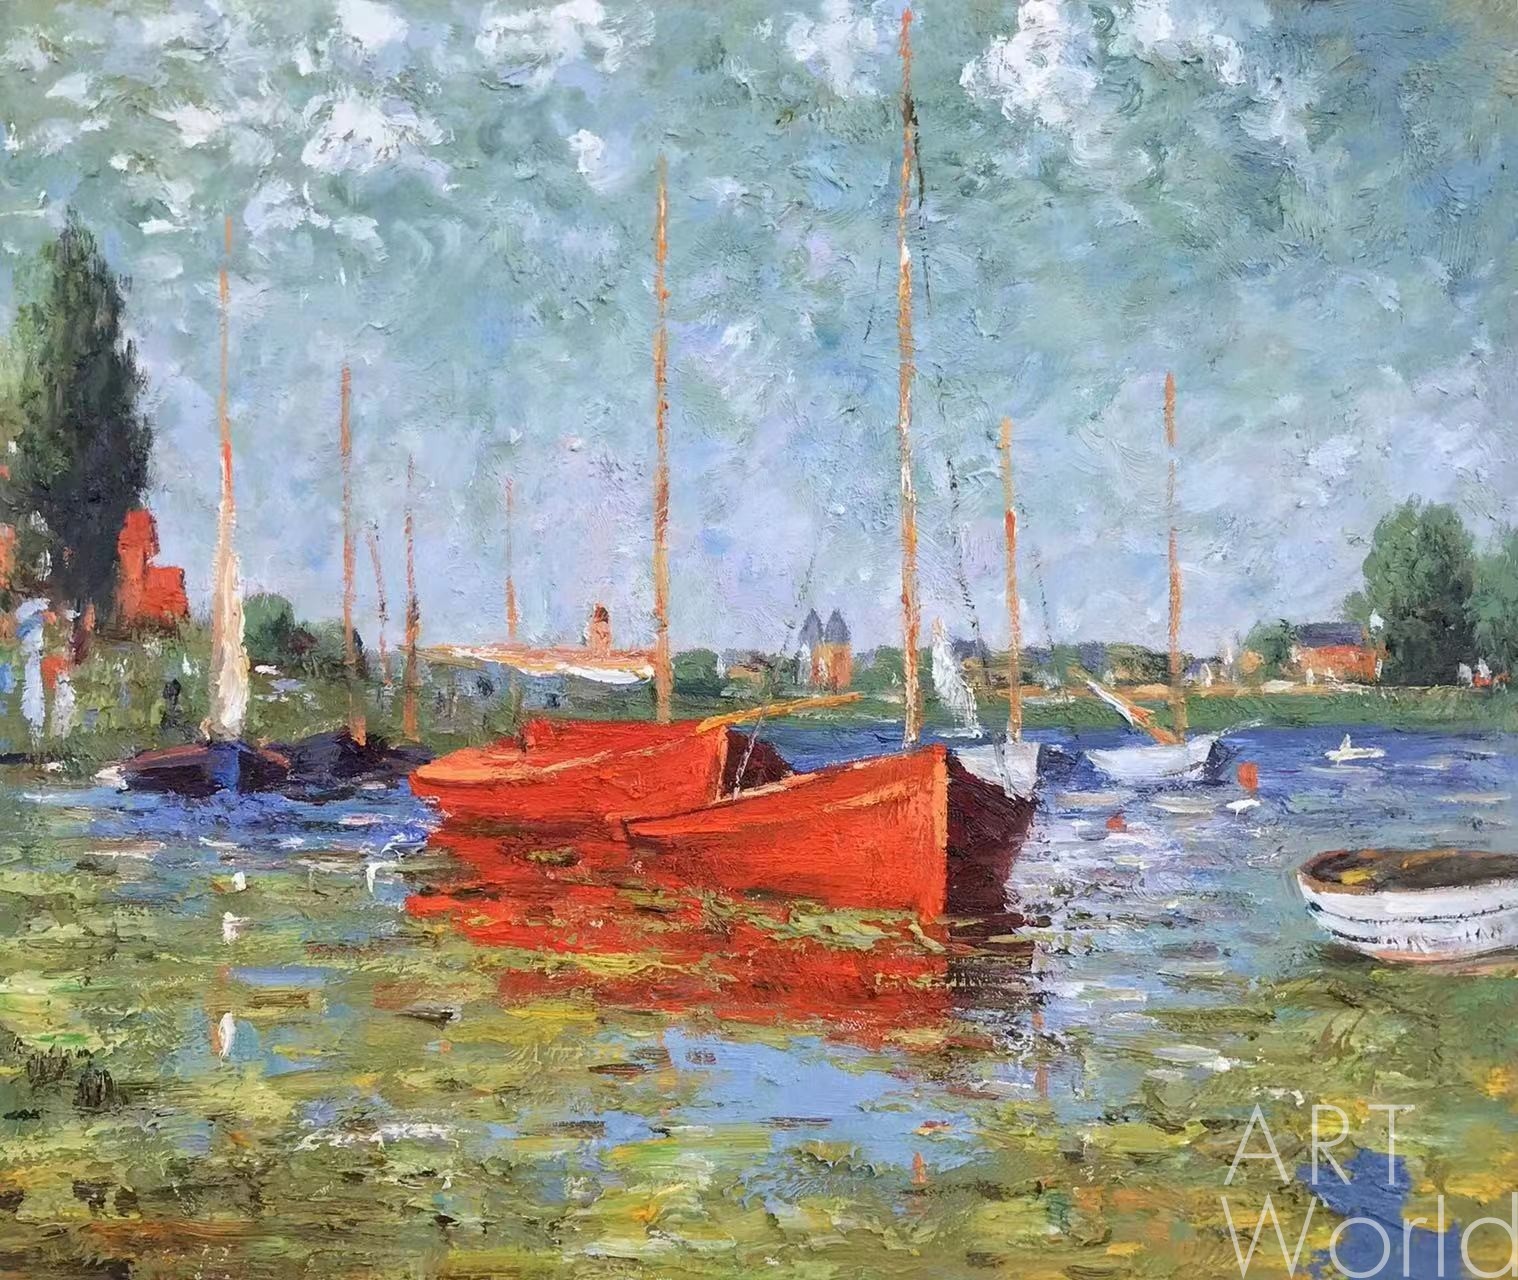 картина масло холст Копия картины "Красные лодки в Аржантее" (Red Boats at Argenteuil, 1875), копия С. Камского, Моне Клод (Oscar-Claude Monet) Артворлд.ру